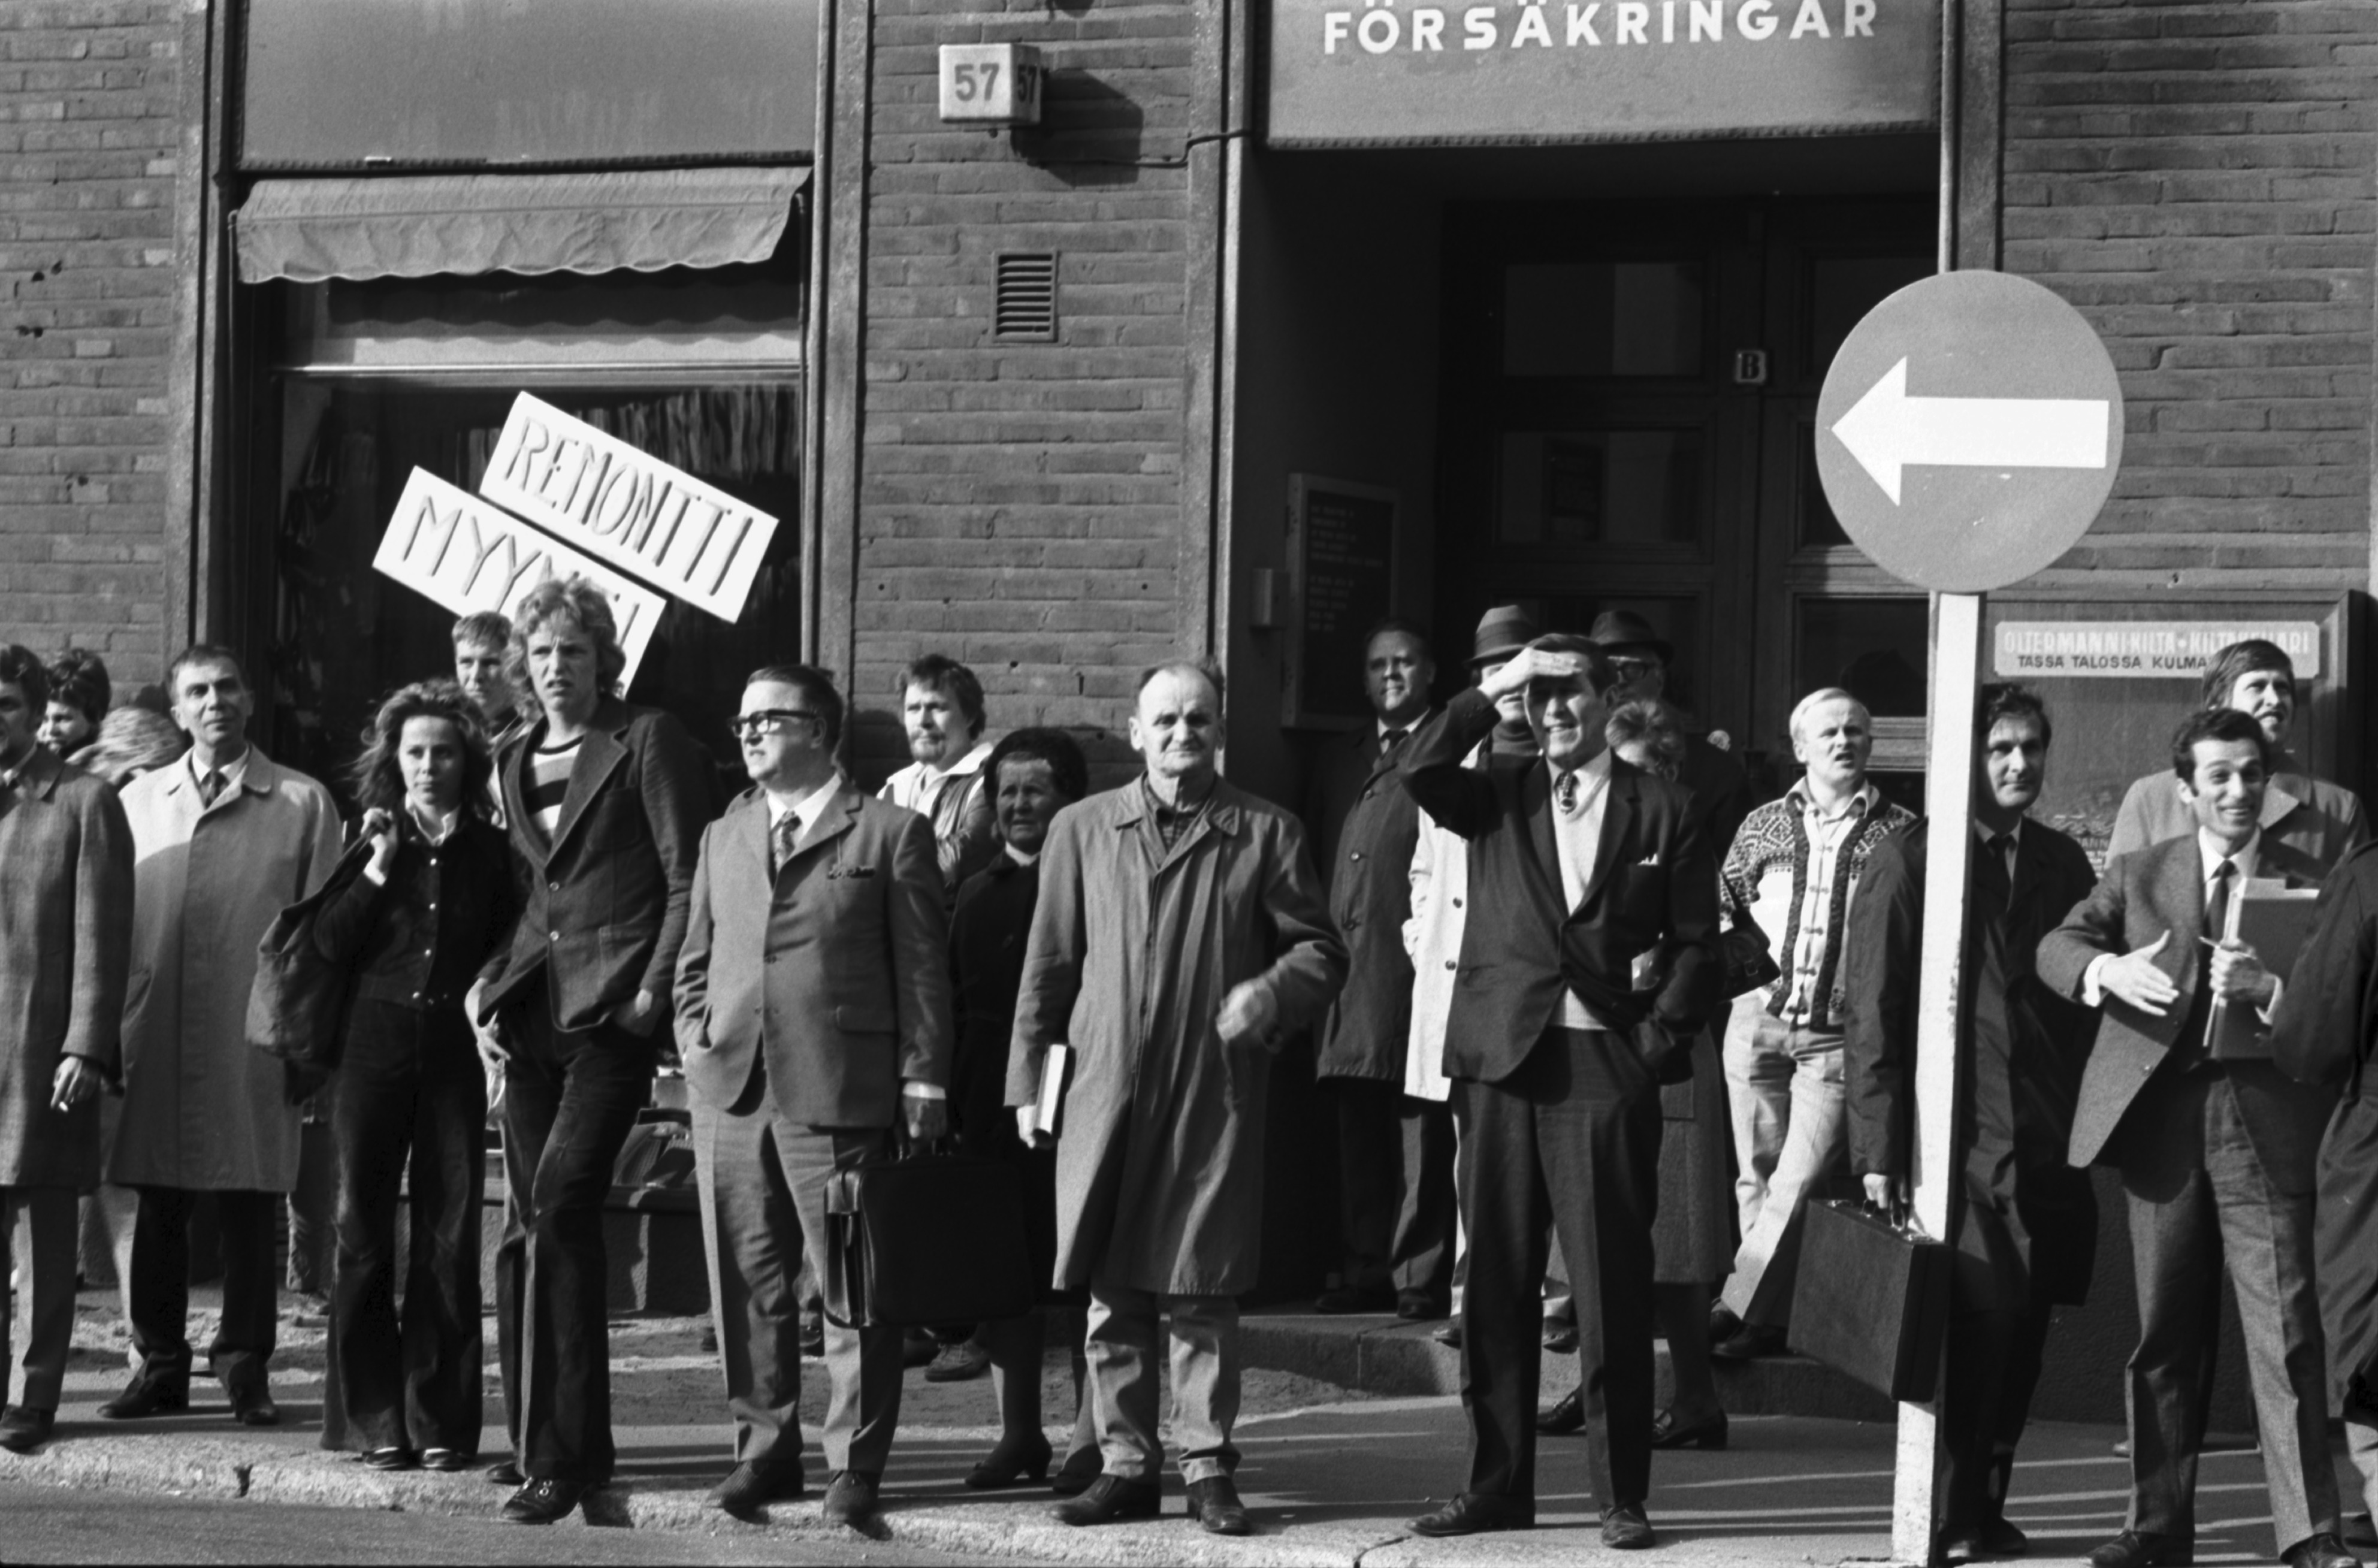 Ihmisiä seuraamassa sionismin vastaista mielenosoitusta Fredrikinkadulla Kansakoulukadun kulmassa.